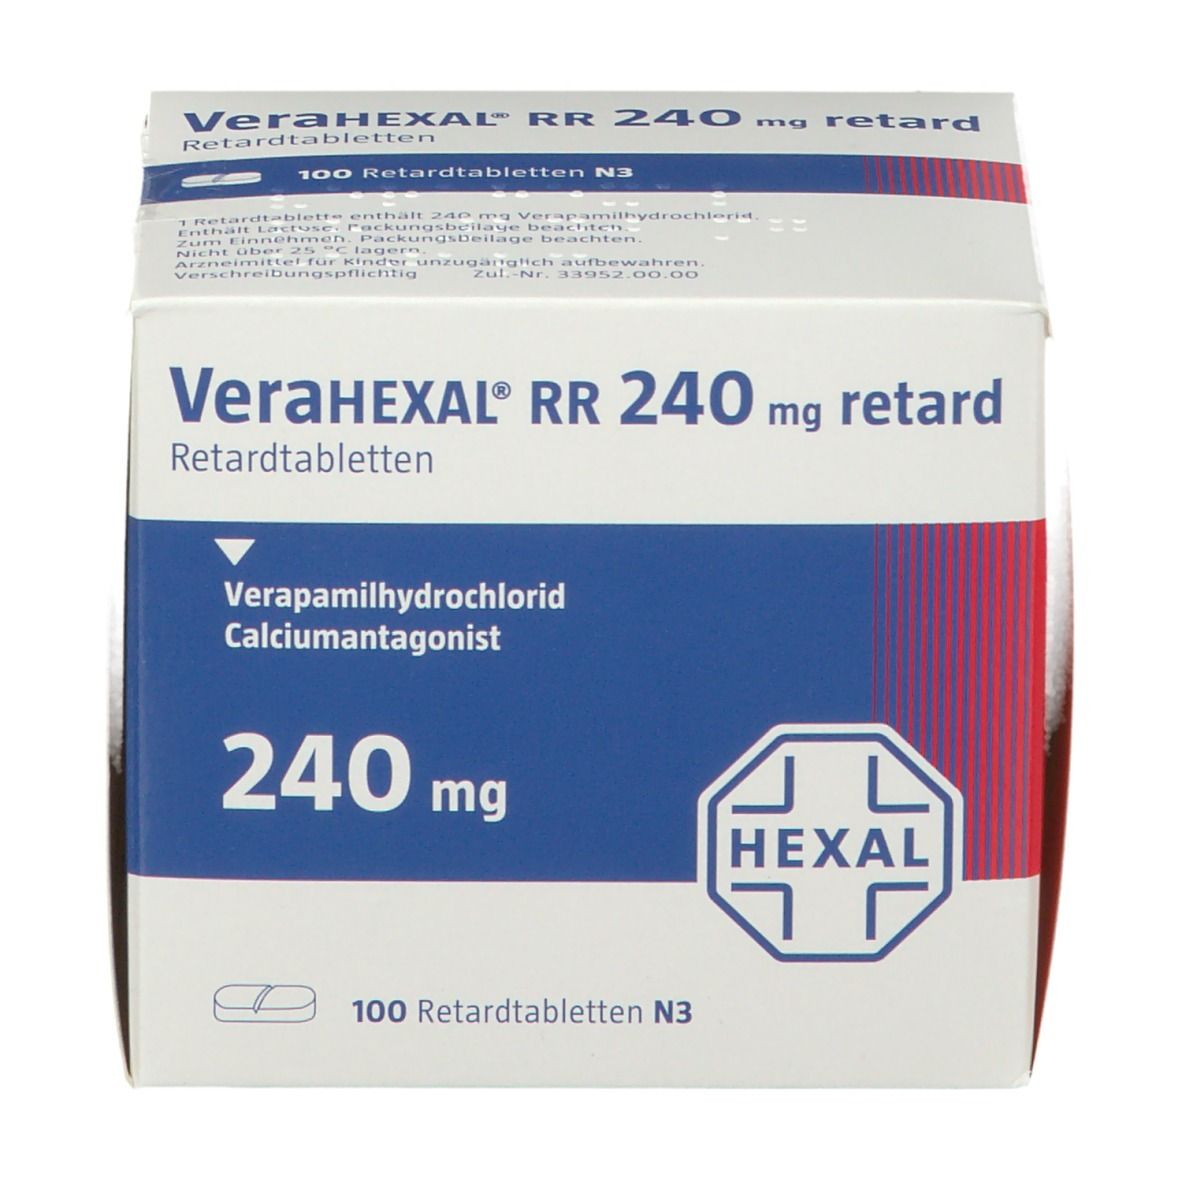 VeraHEXAL® RR 240 mg